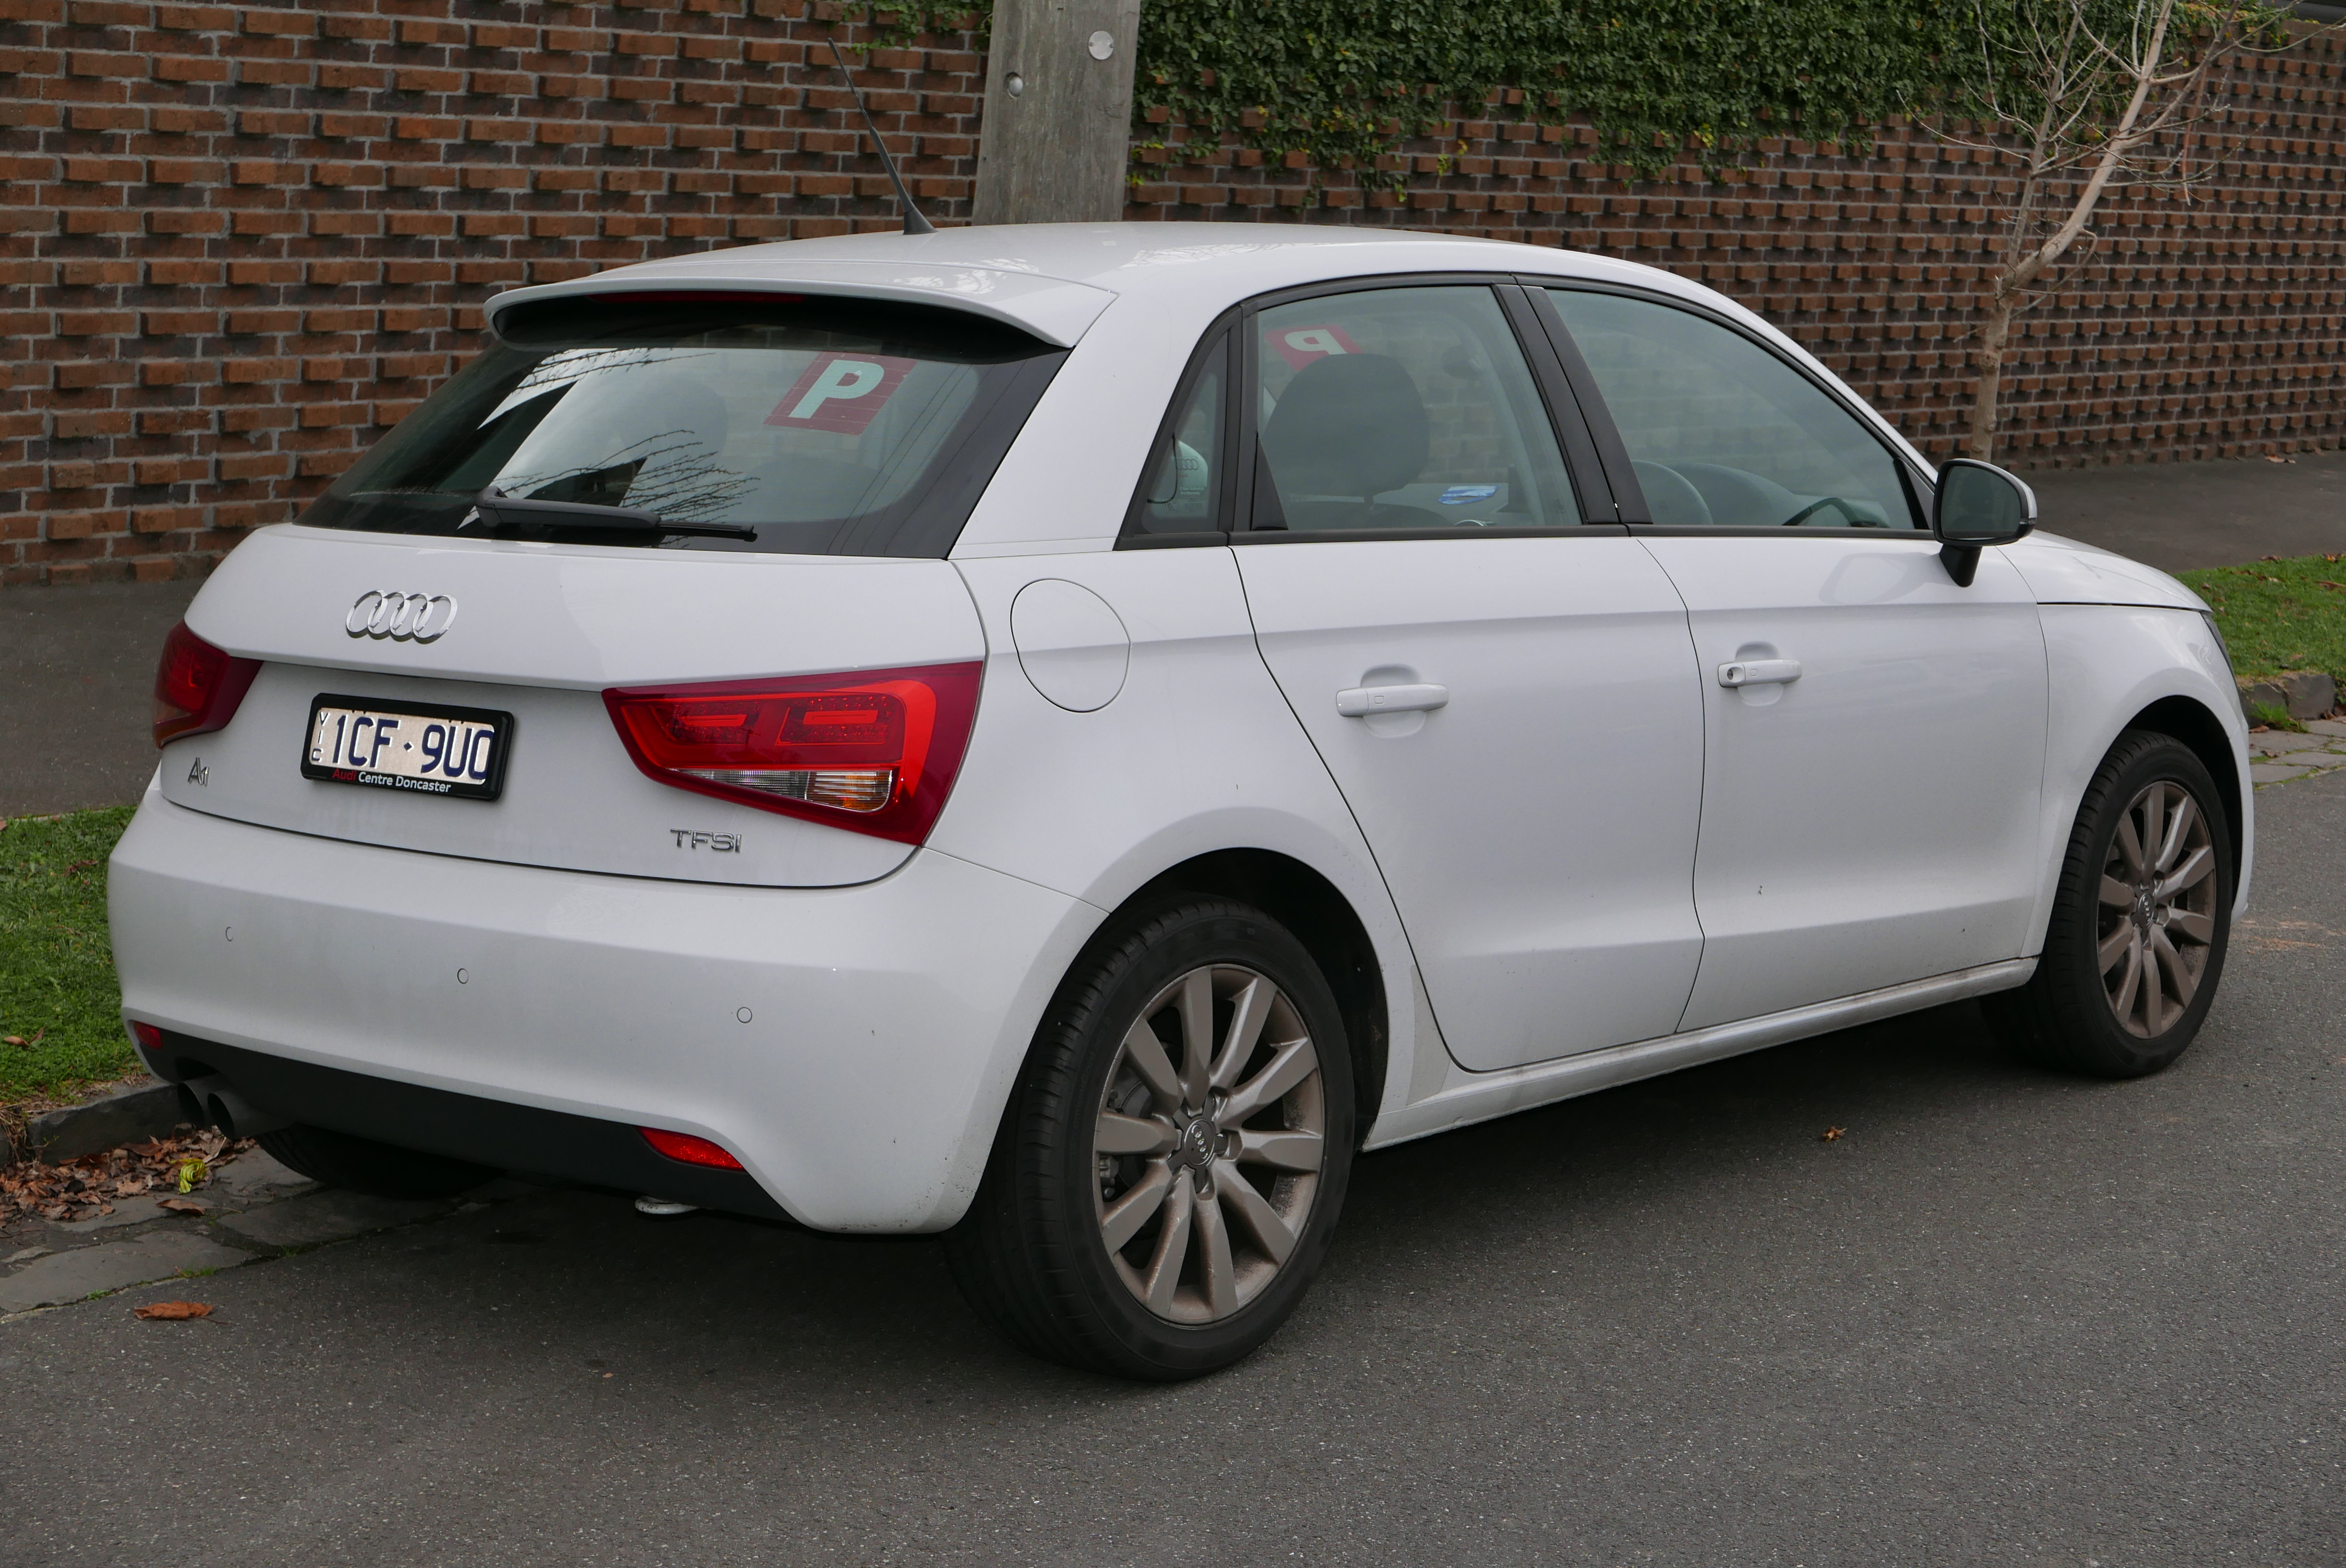 Audi A1 hatchback photo